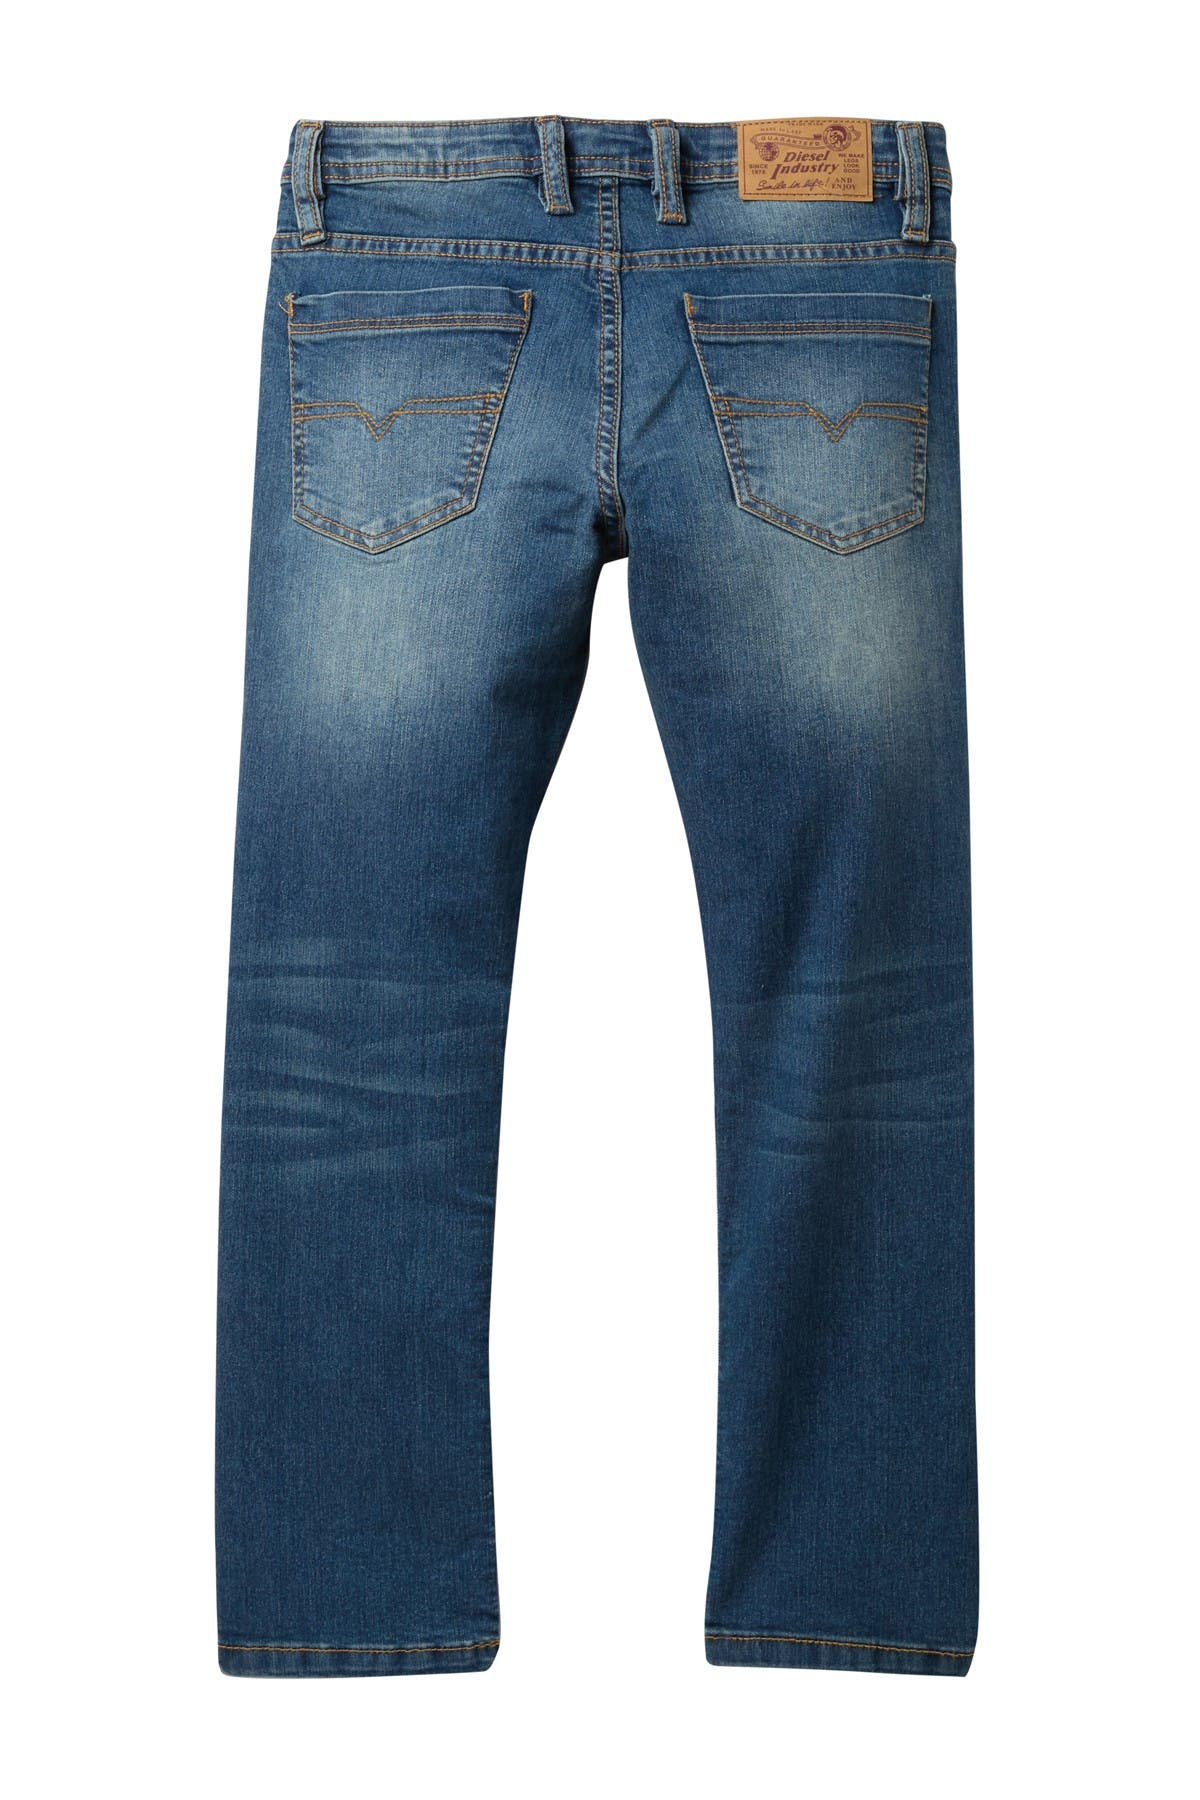 diesel waykee jeans sale